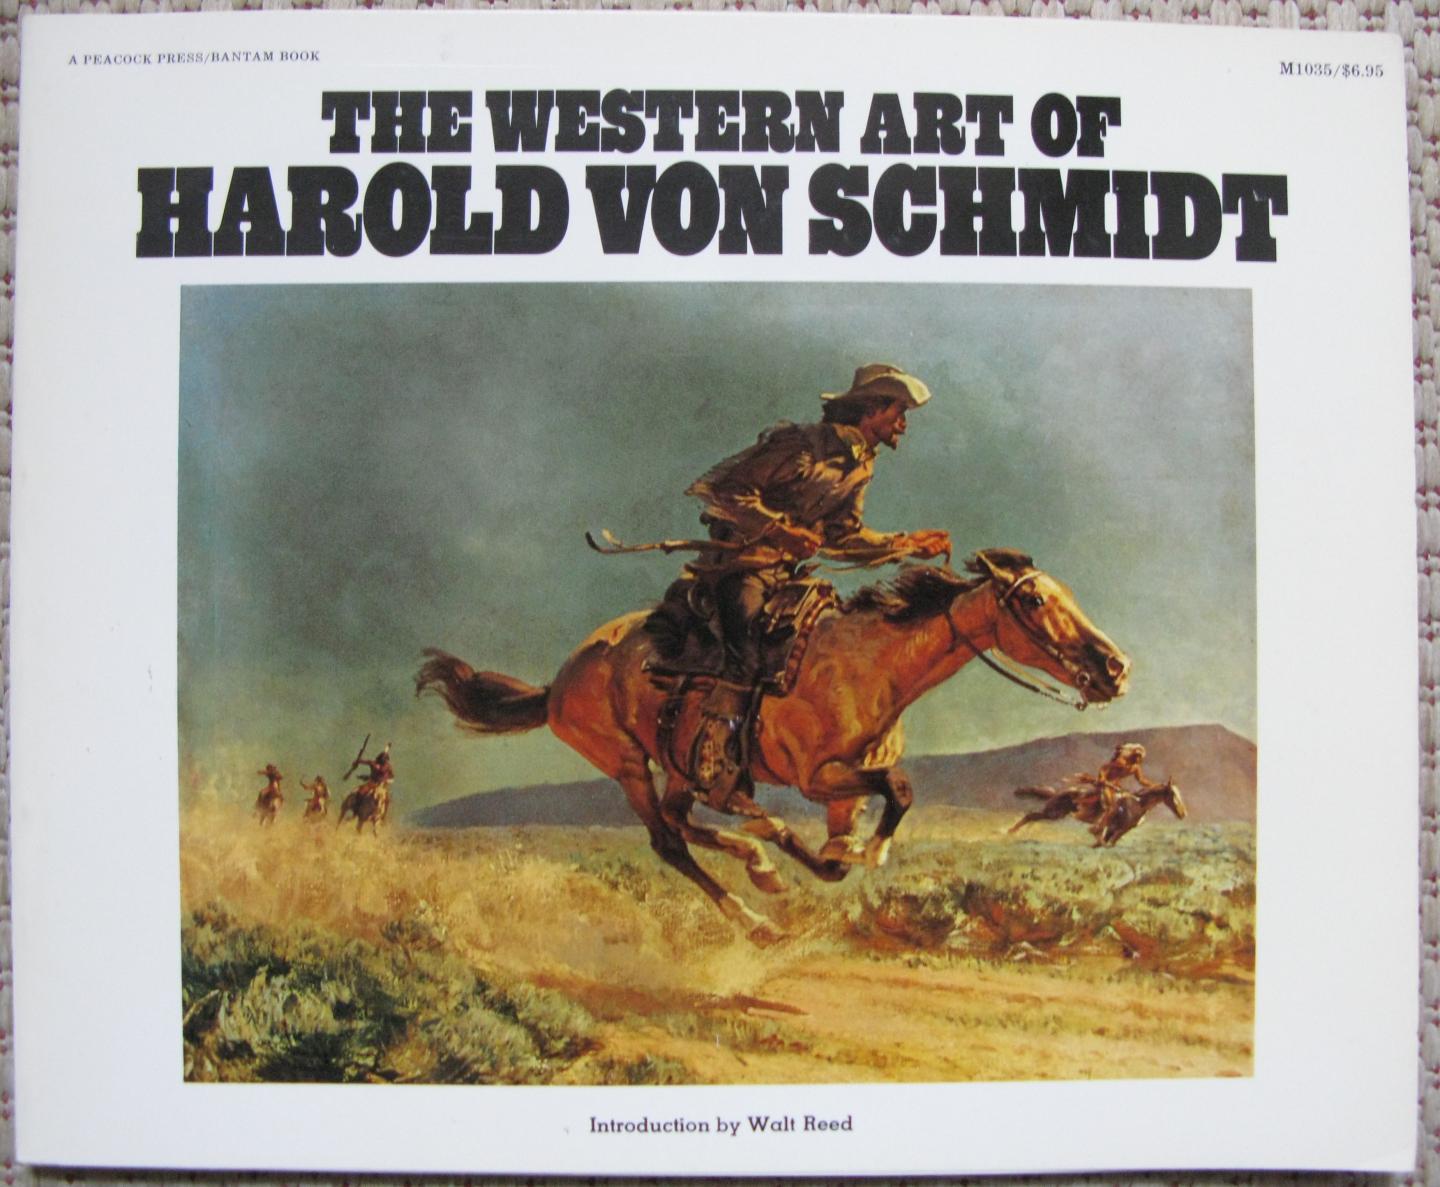 Reed, Walt (introduction) - The western art of Harold van Schmidt